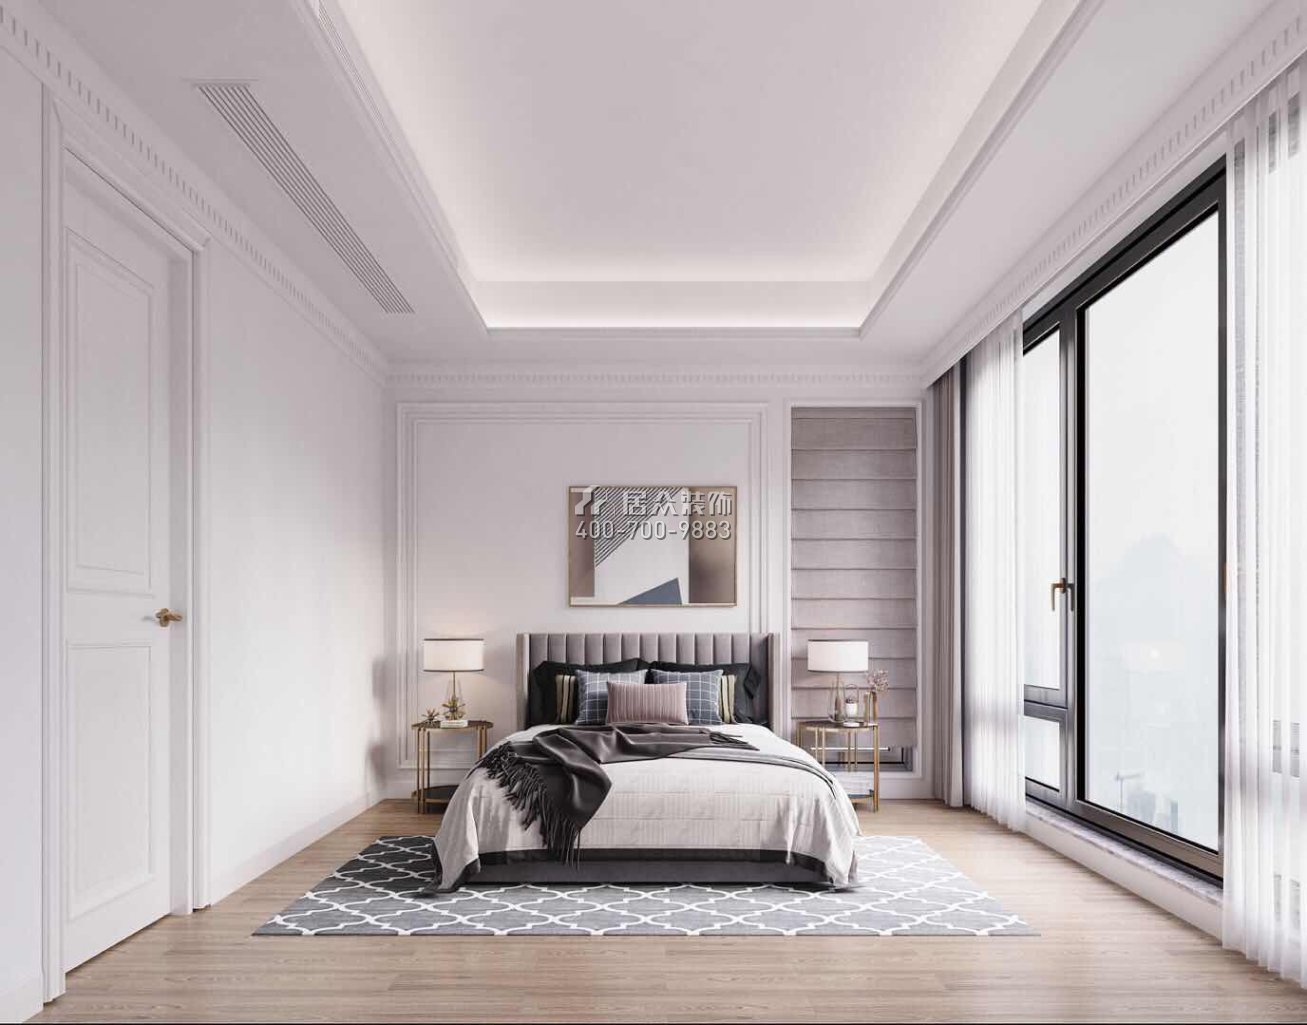 九洲保利天河320平方米现代简约风格别墅户型卧室装修效果图